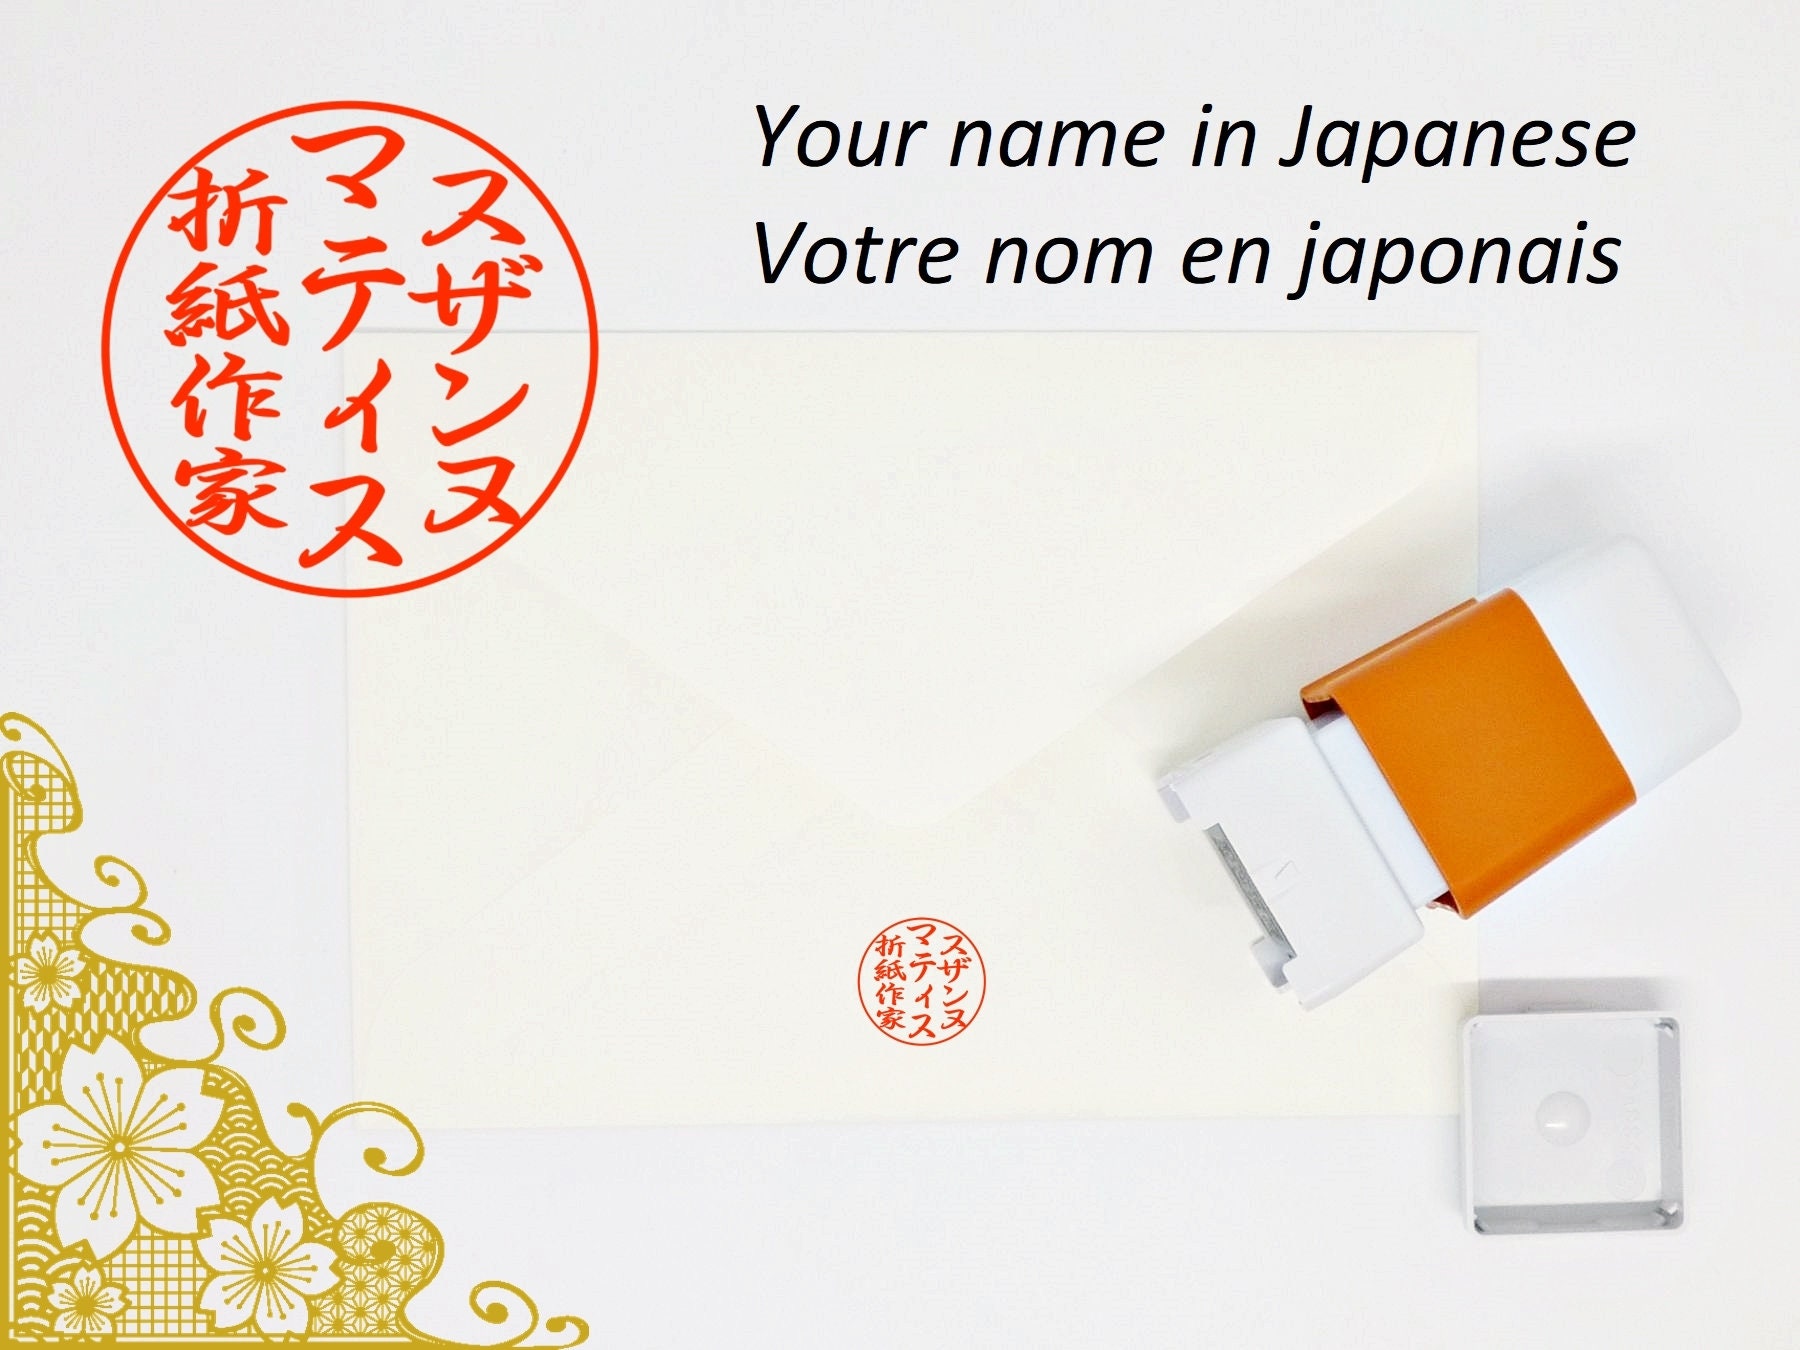 Hanko - Japanese Signature Stamp